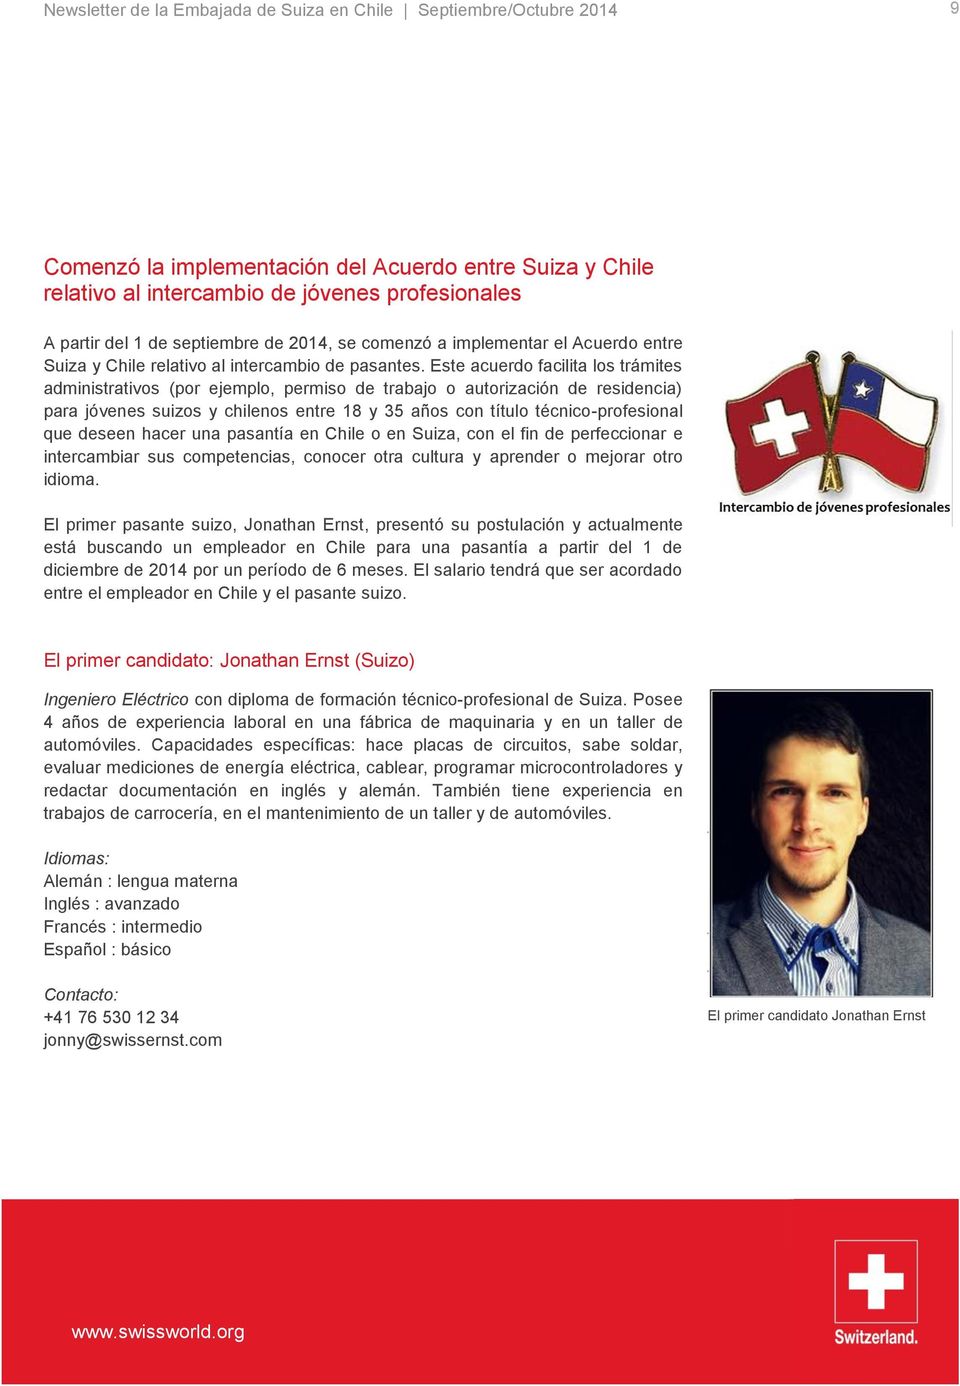 Este acuerdo facilita los trámites administrativos (por ejemplo, permiso de trabajo o autorización de residencia) para jóvenes suizos y chilenos entre 18 y 35 años con título técnico-profesional que